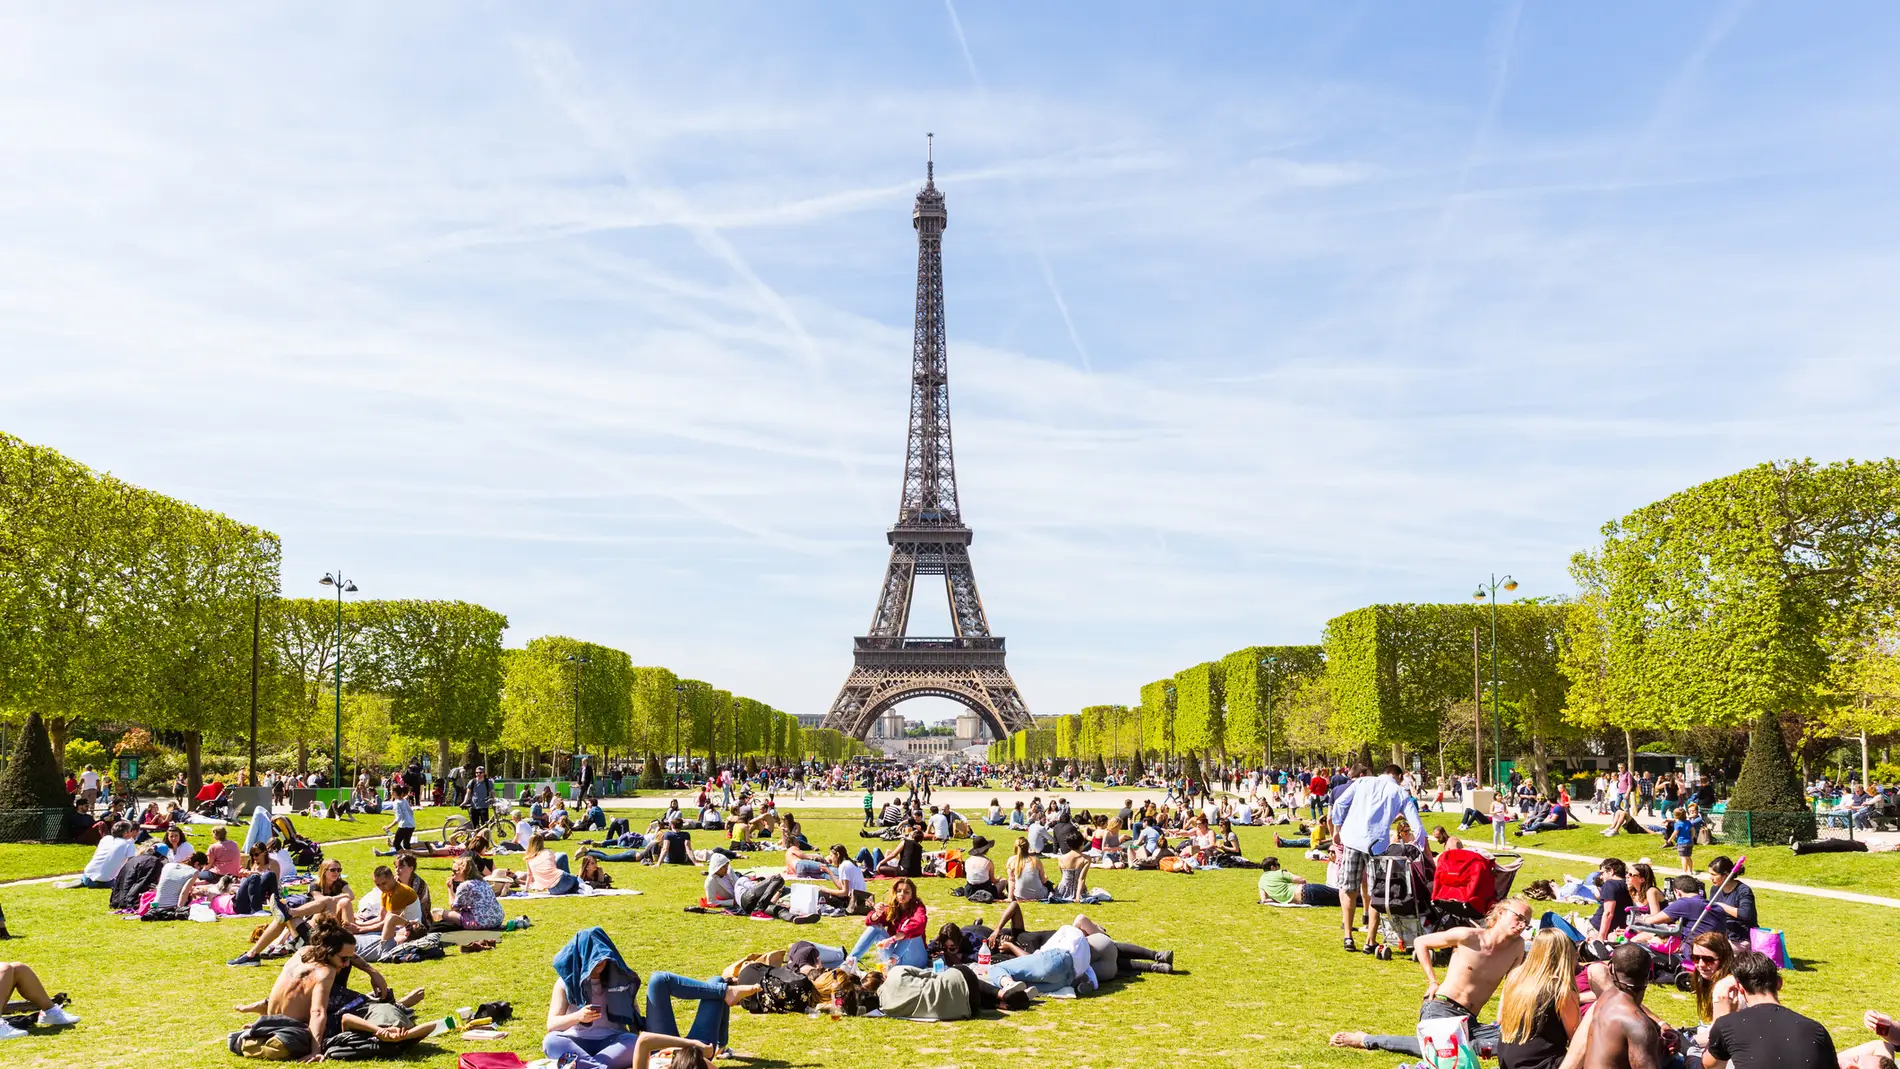 Torre Eiffel de París llena de gente